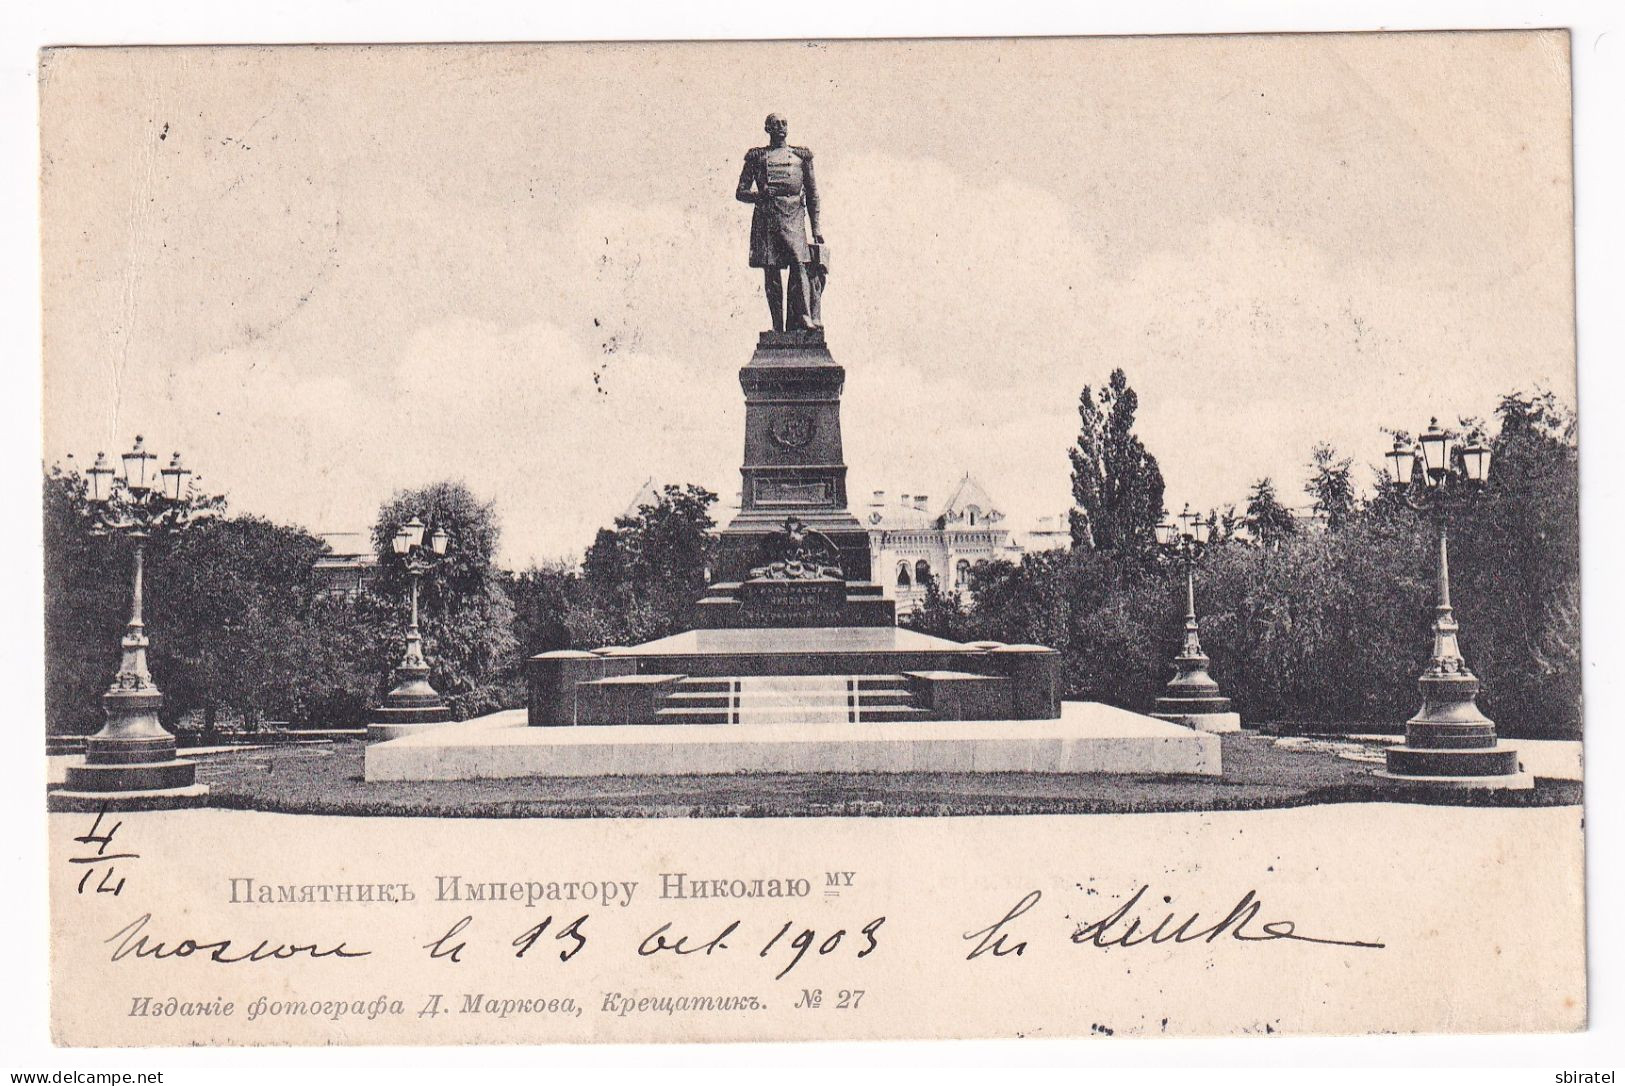 Kiev Kiew Kieff Monument NI Markov - Ukraine